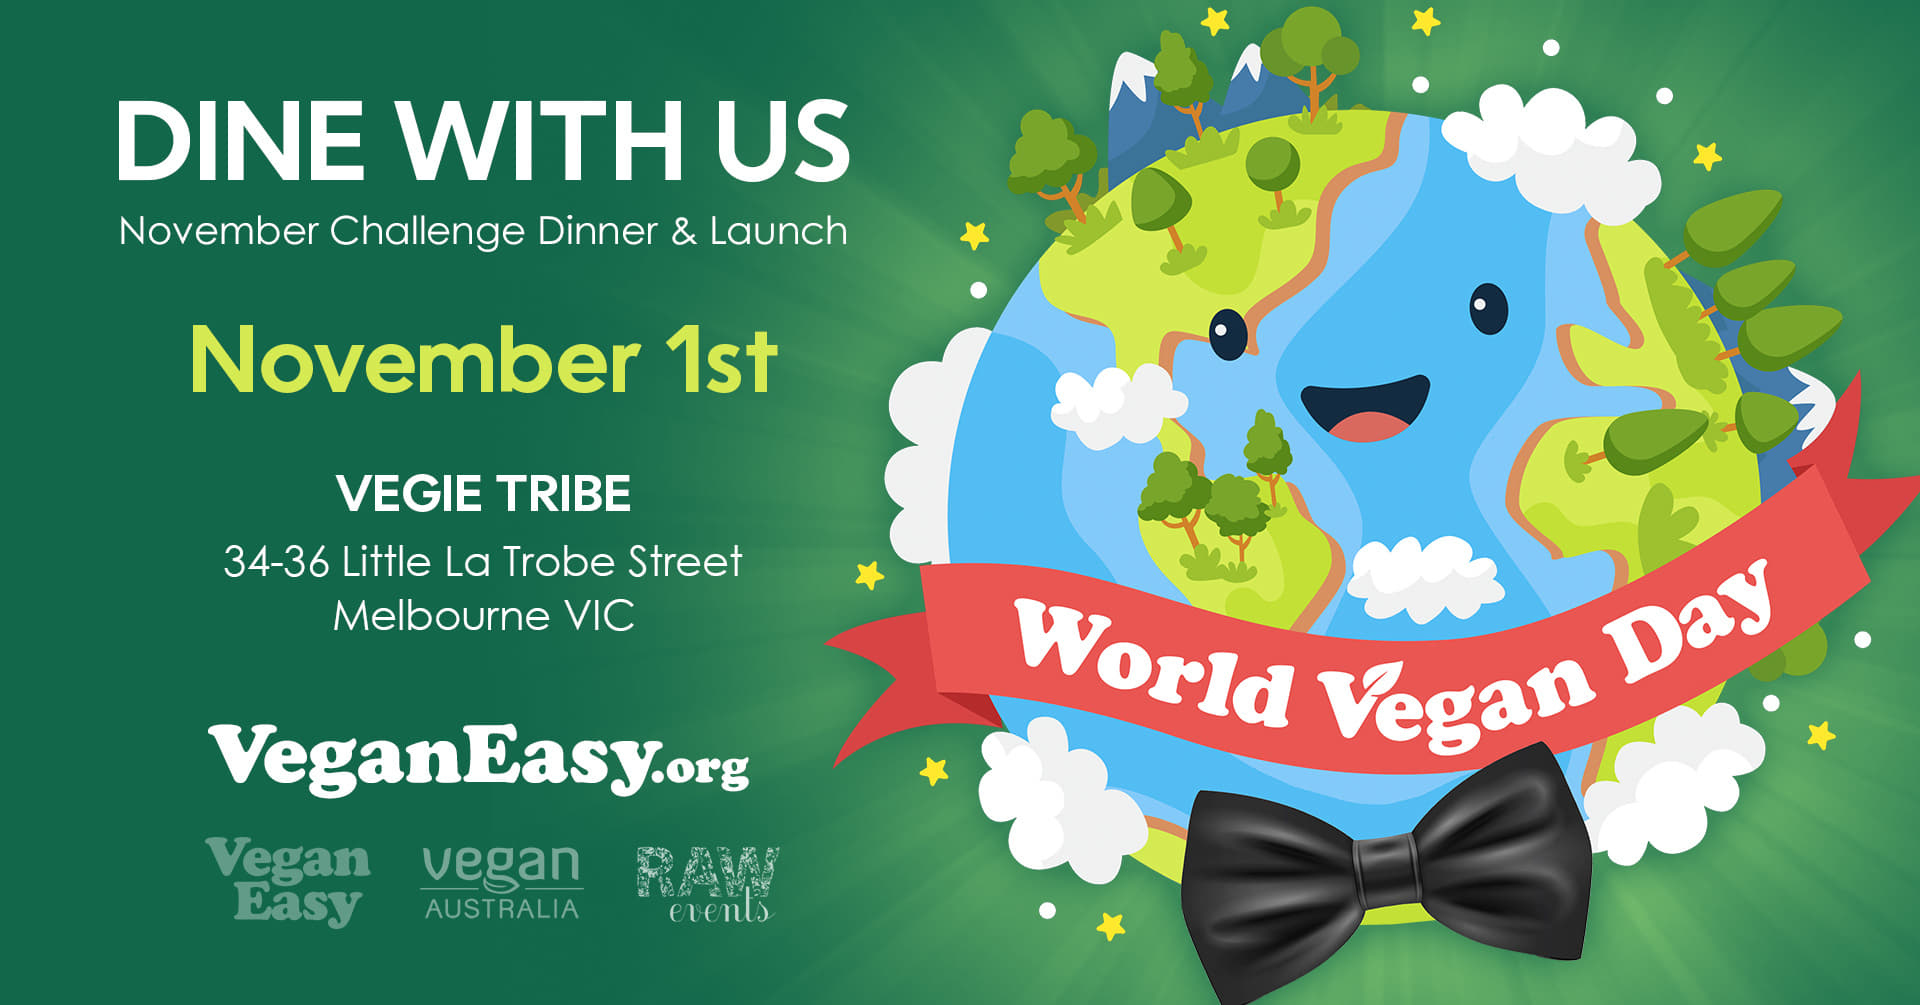 World_Vegan_Day_dinner_banner.jpg